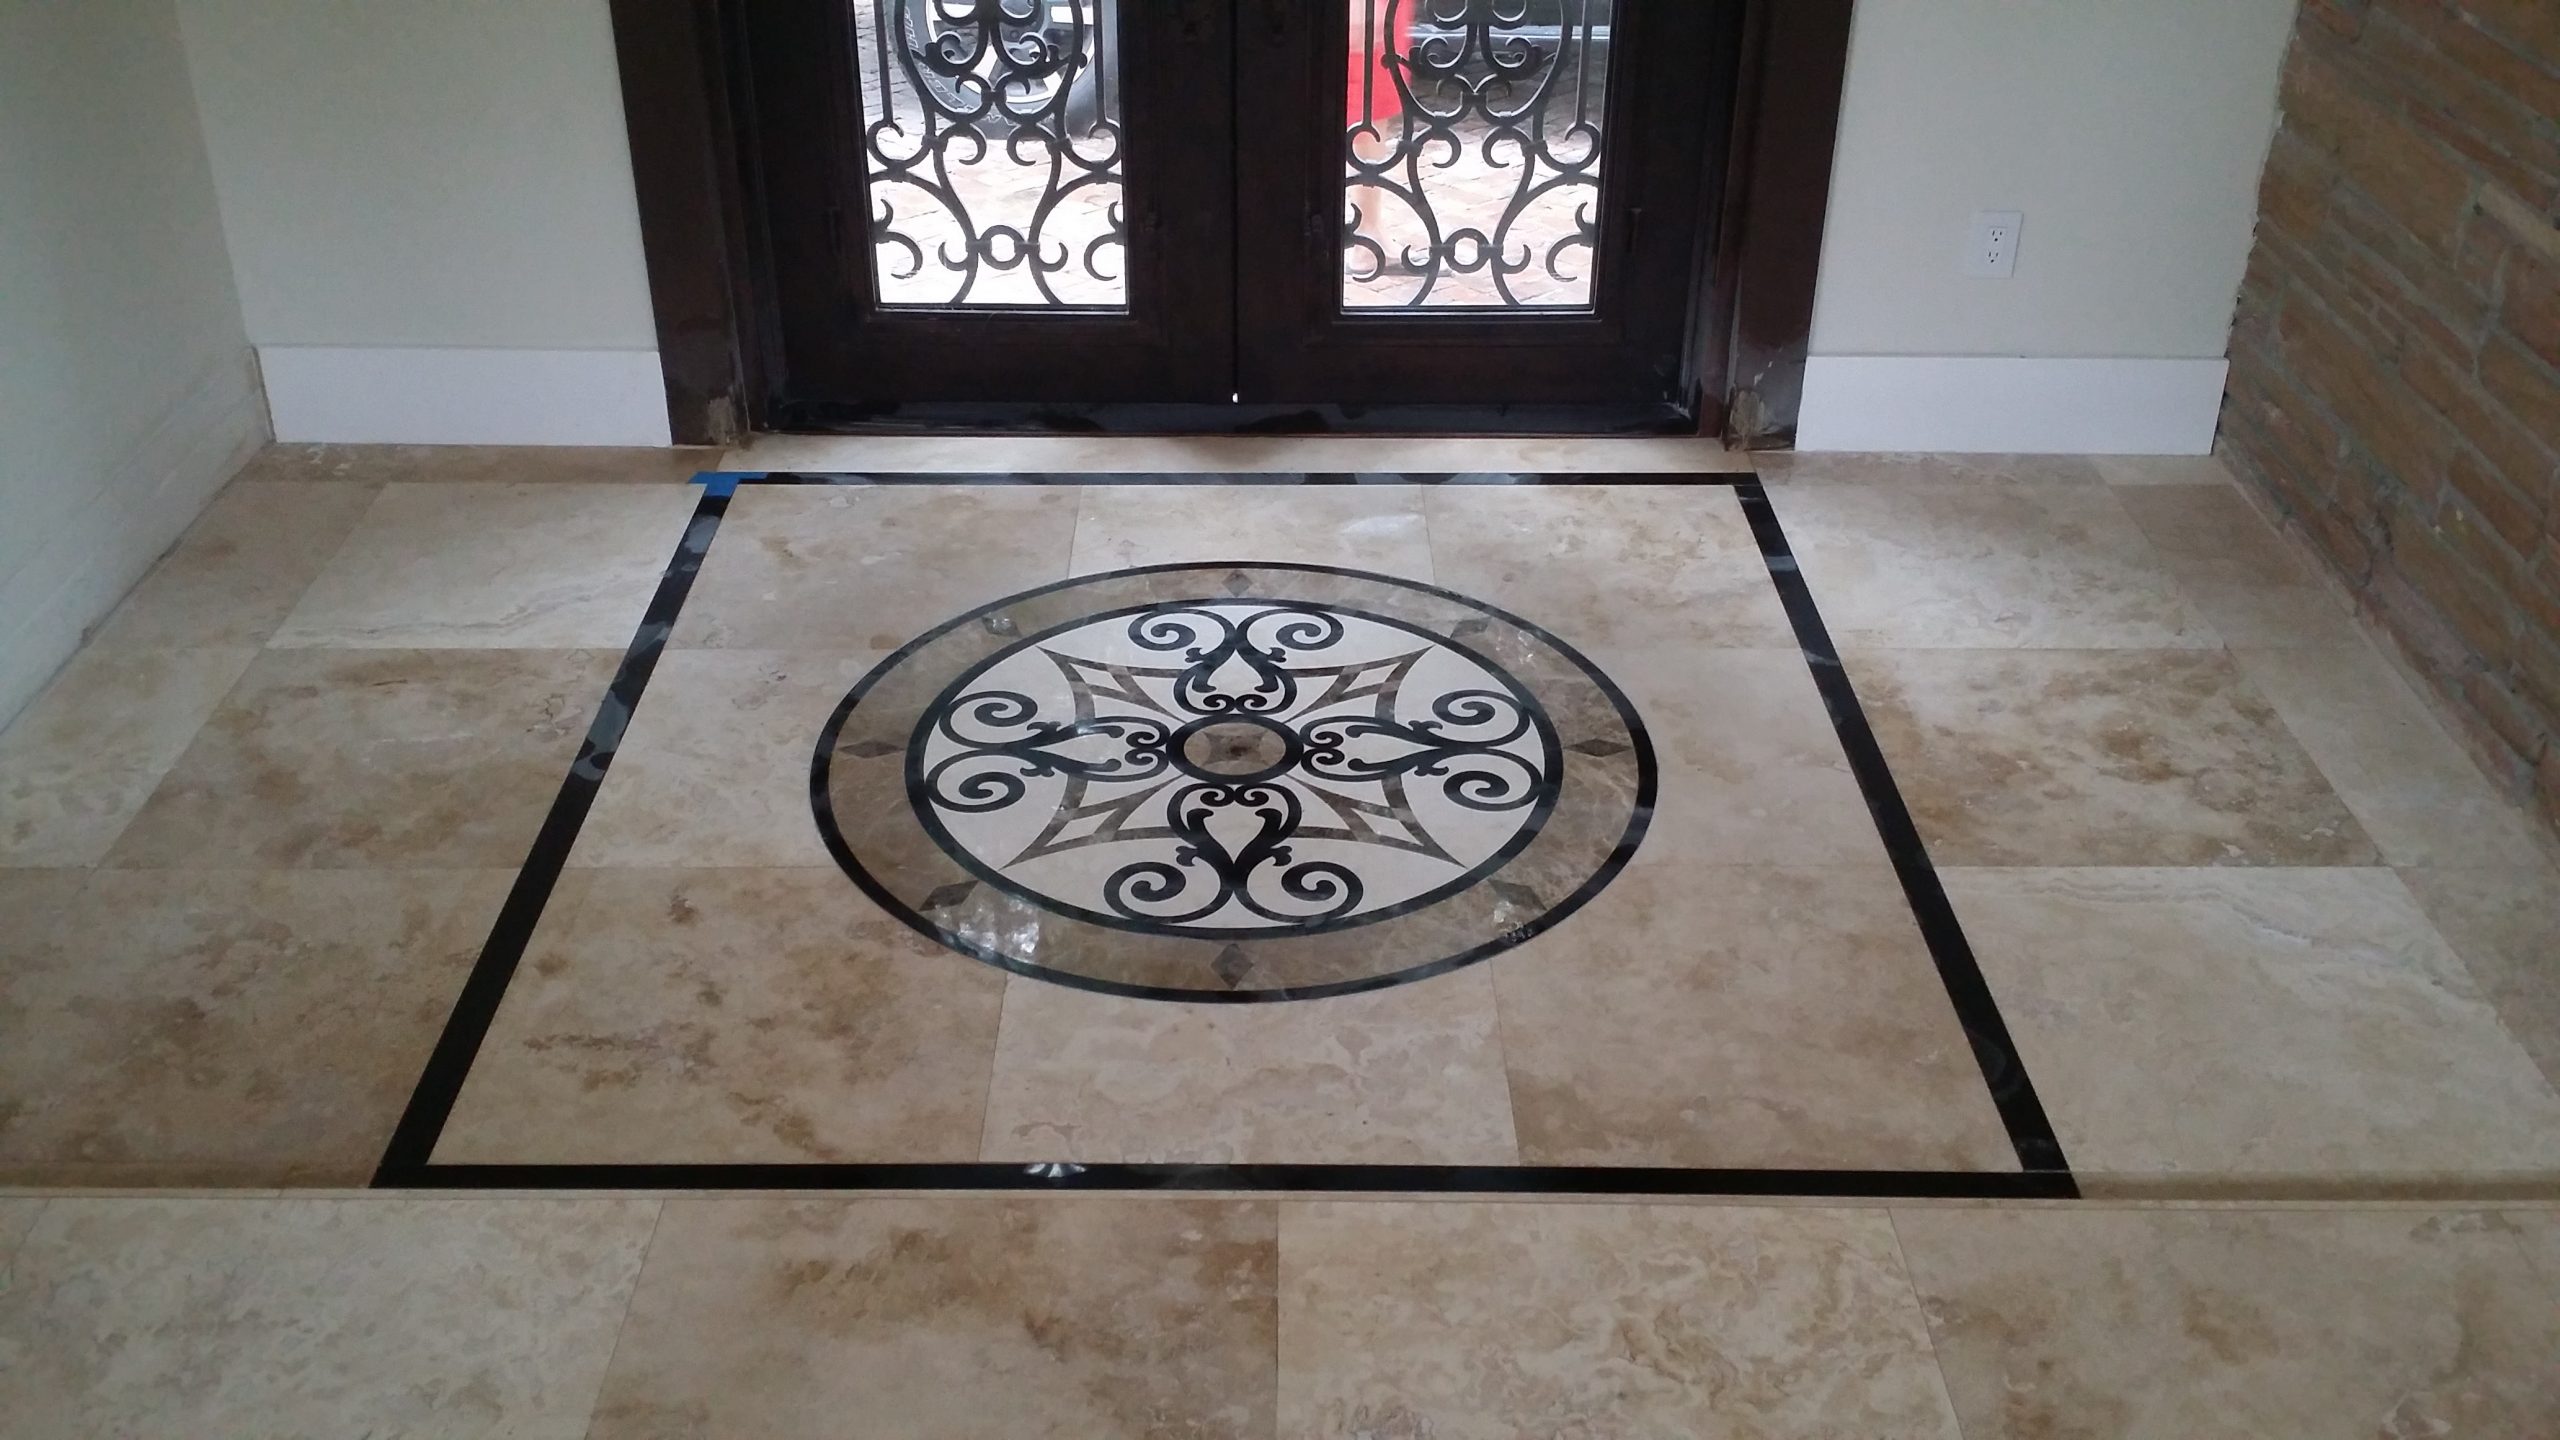 maimi floors tile & flooring installations self leveling bathroom renovations